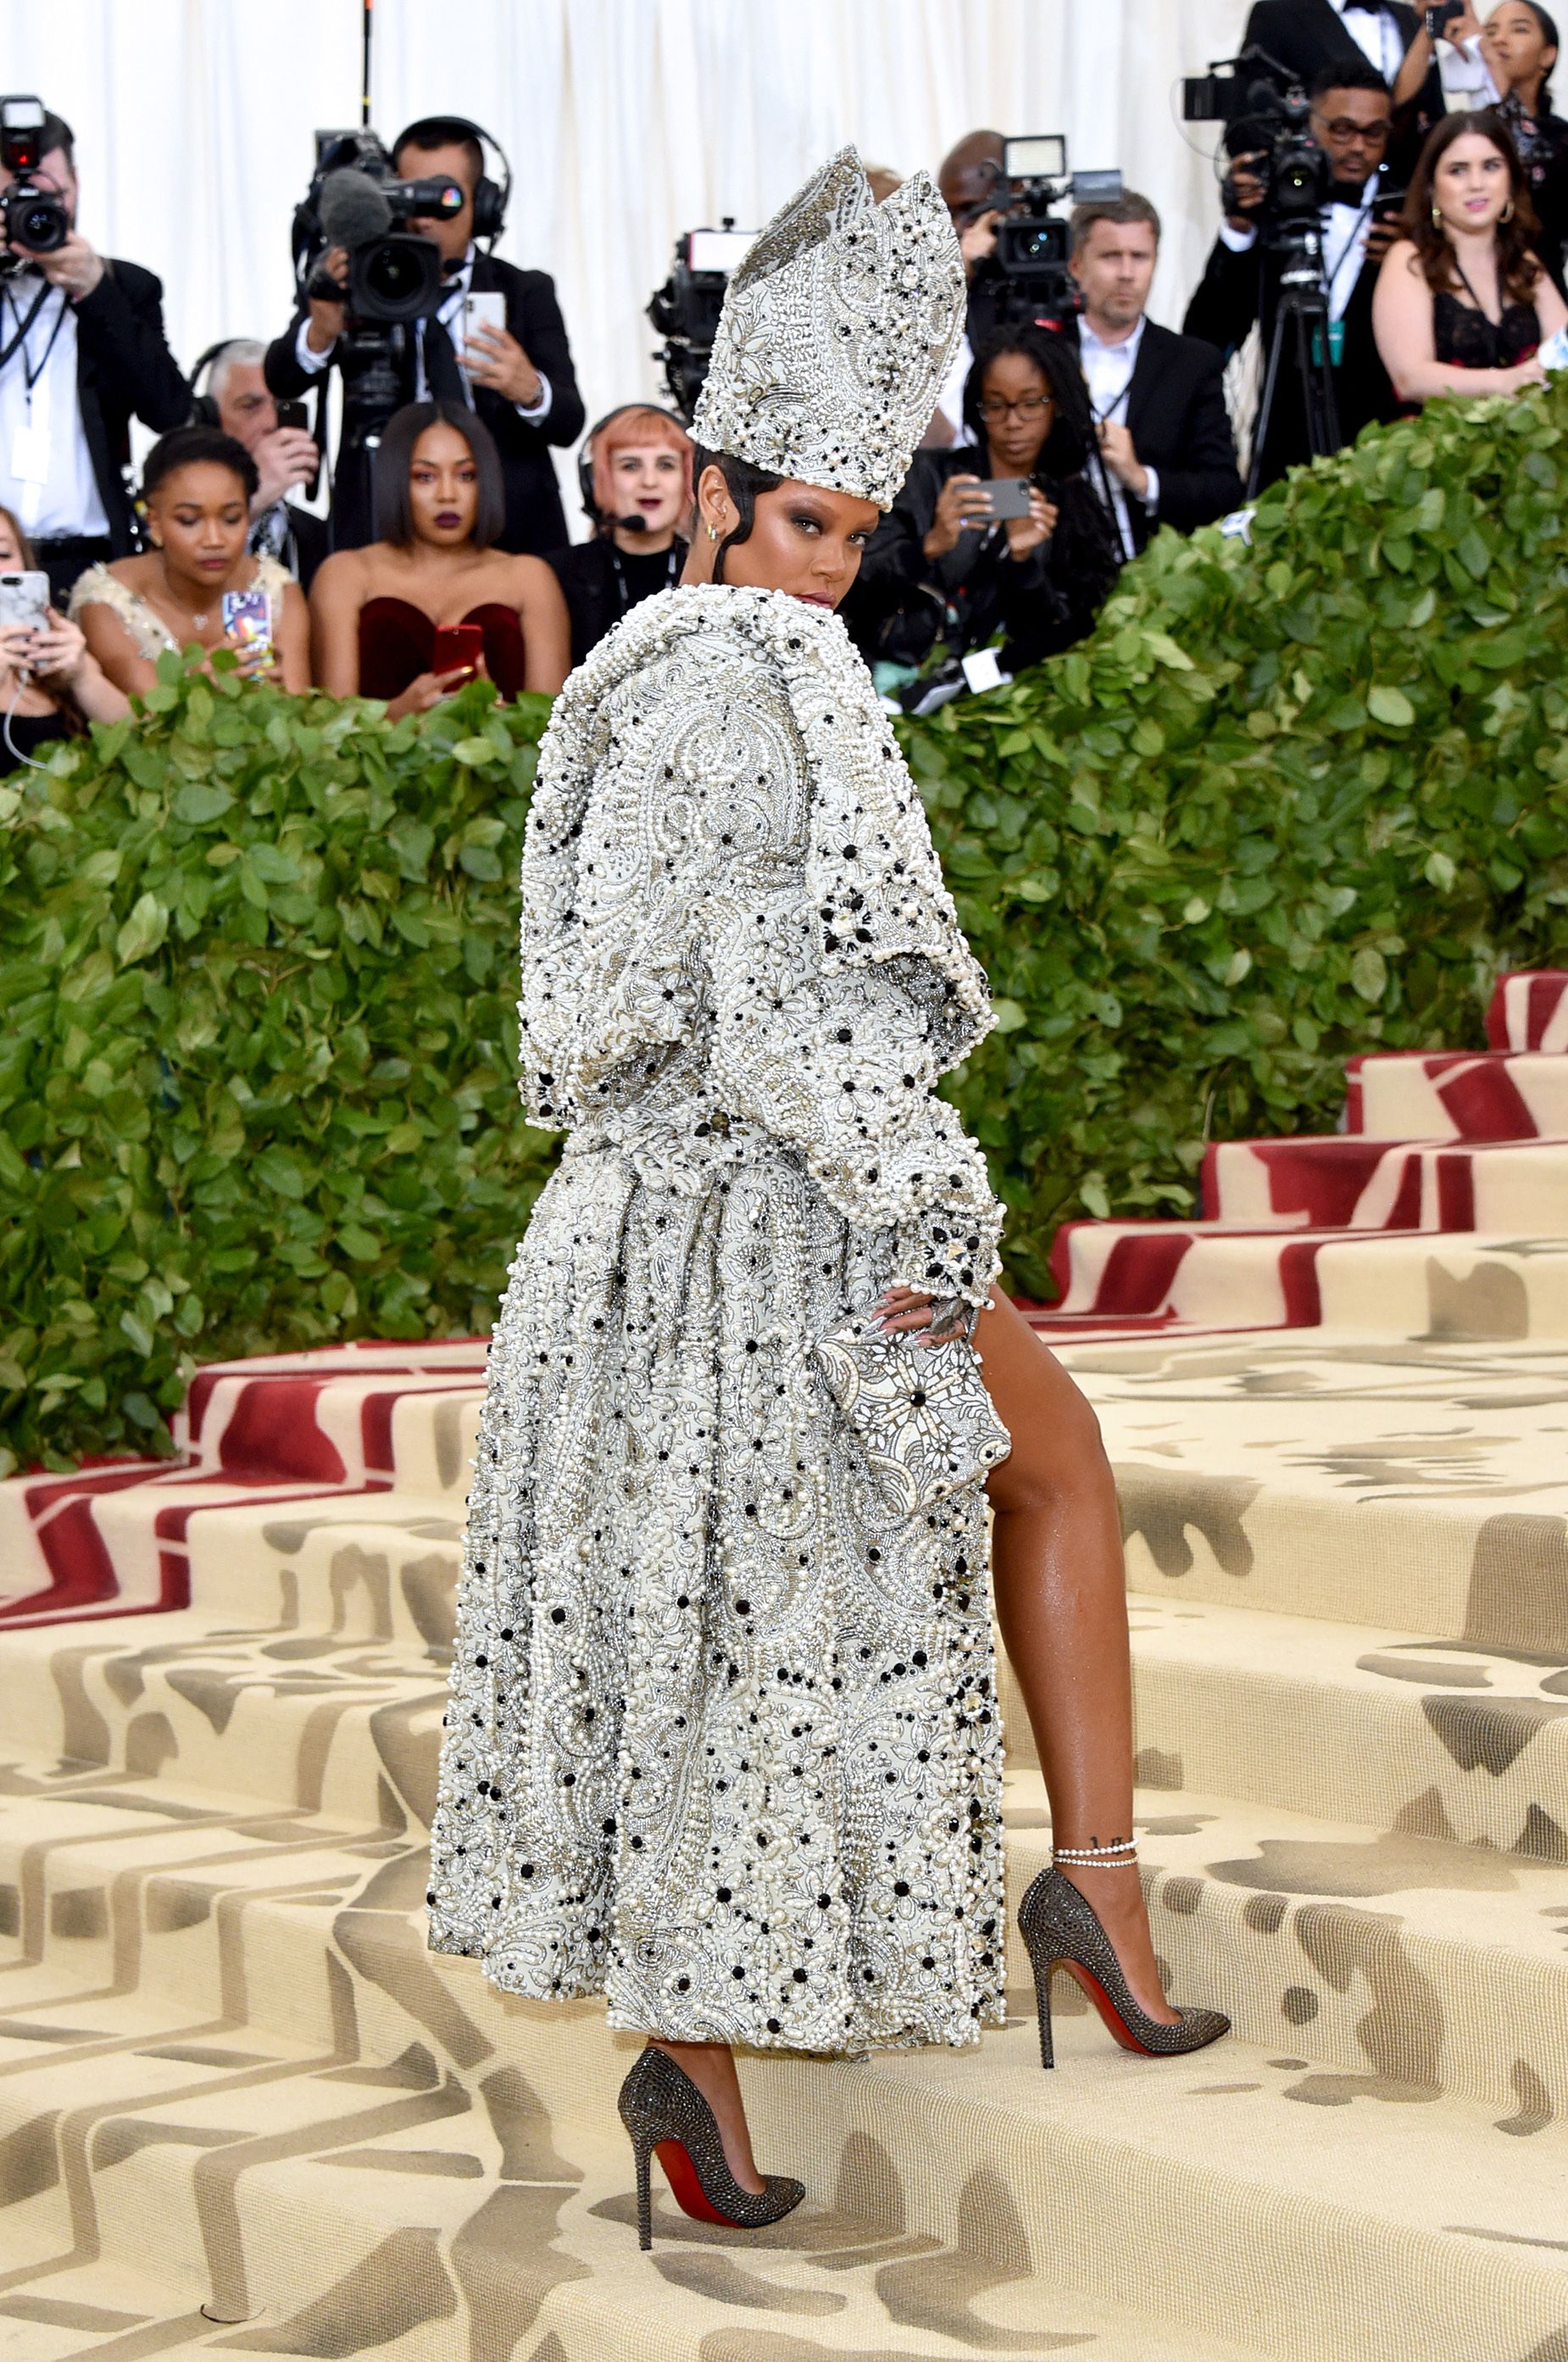 La suela roja es un auténtico elemento básico de la alfombra roja. Rihanna eligió un par para usar en la Met Gala con el tema "Camp" de 2019.